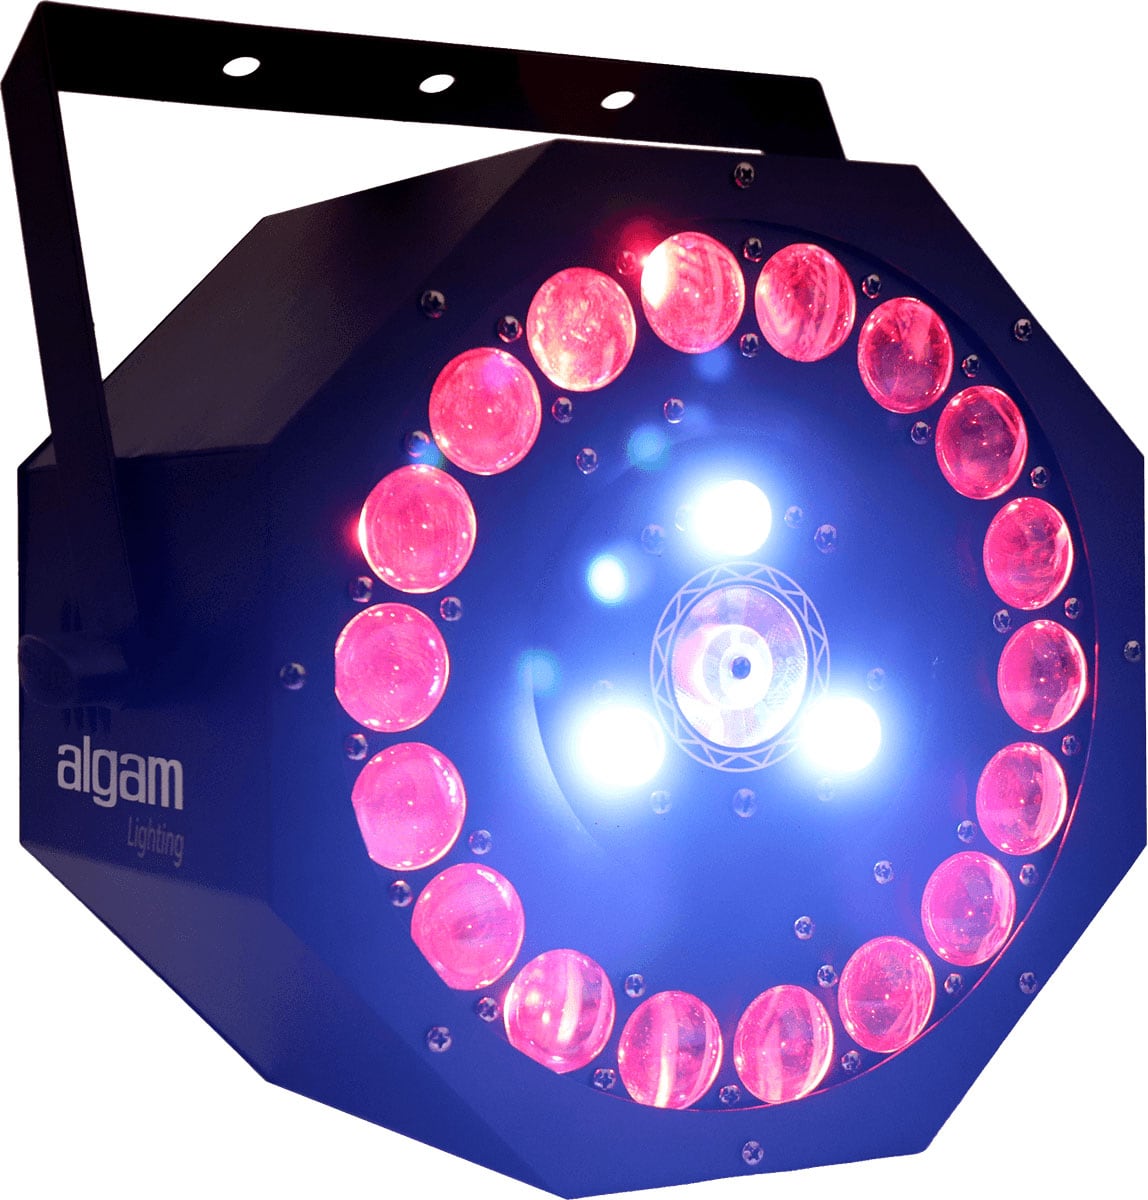 ALGAM LIGHTING SUNFLOWER - 3 X 18W 3 IN 1 LED EFFECT MET LASER